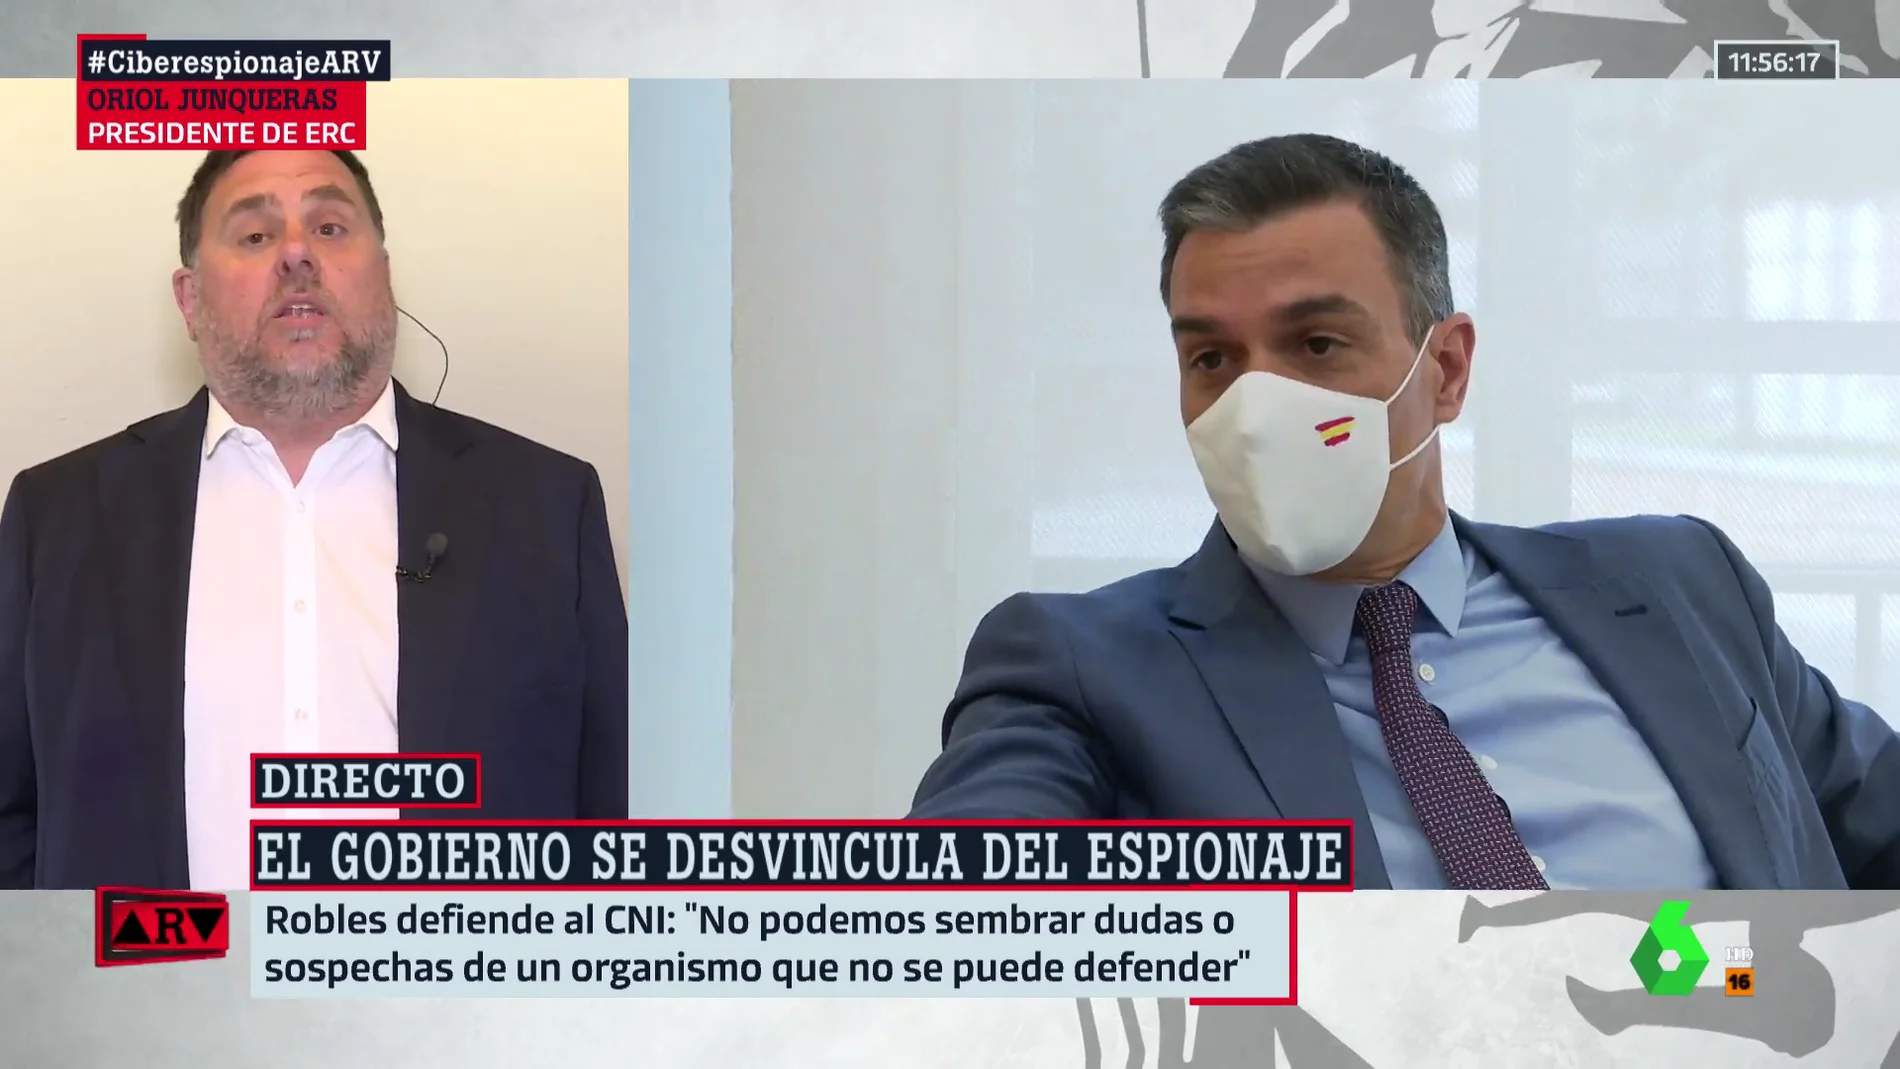 Oriol Junqueras: "¿Dónde está el límite? Nadie tiene la garantía de que no esté siendo espiado"